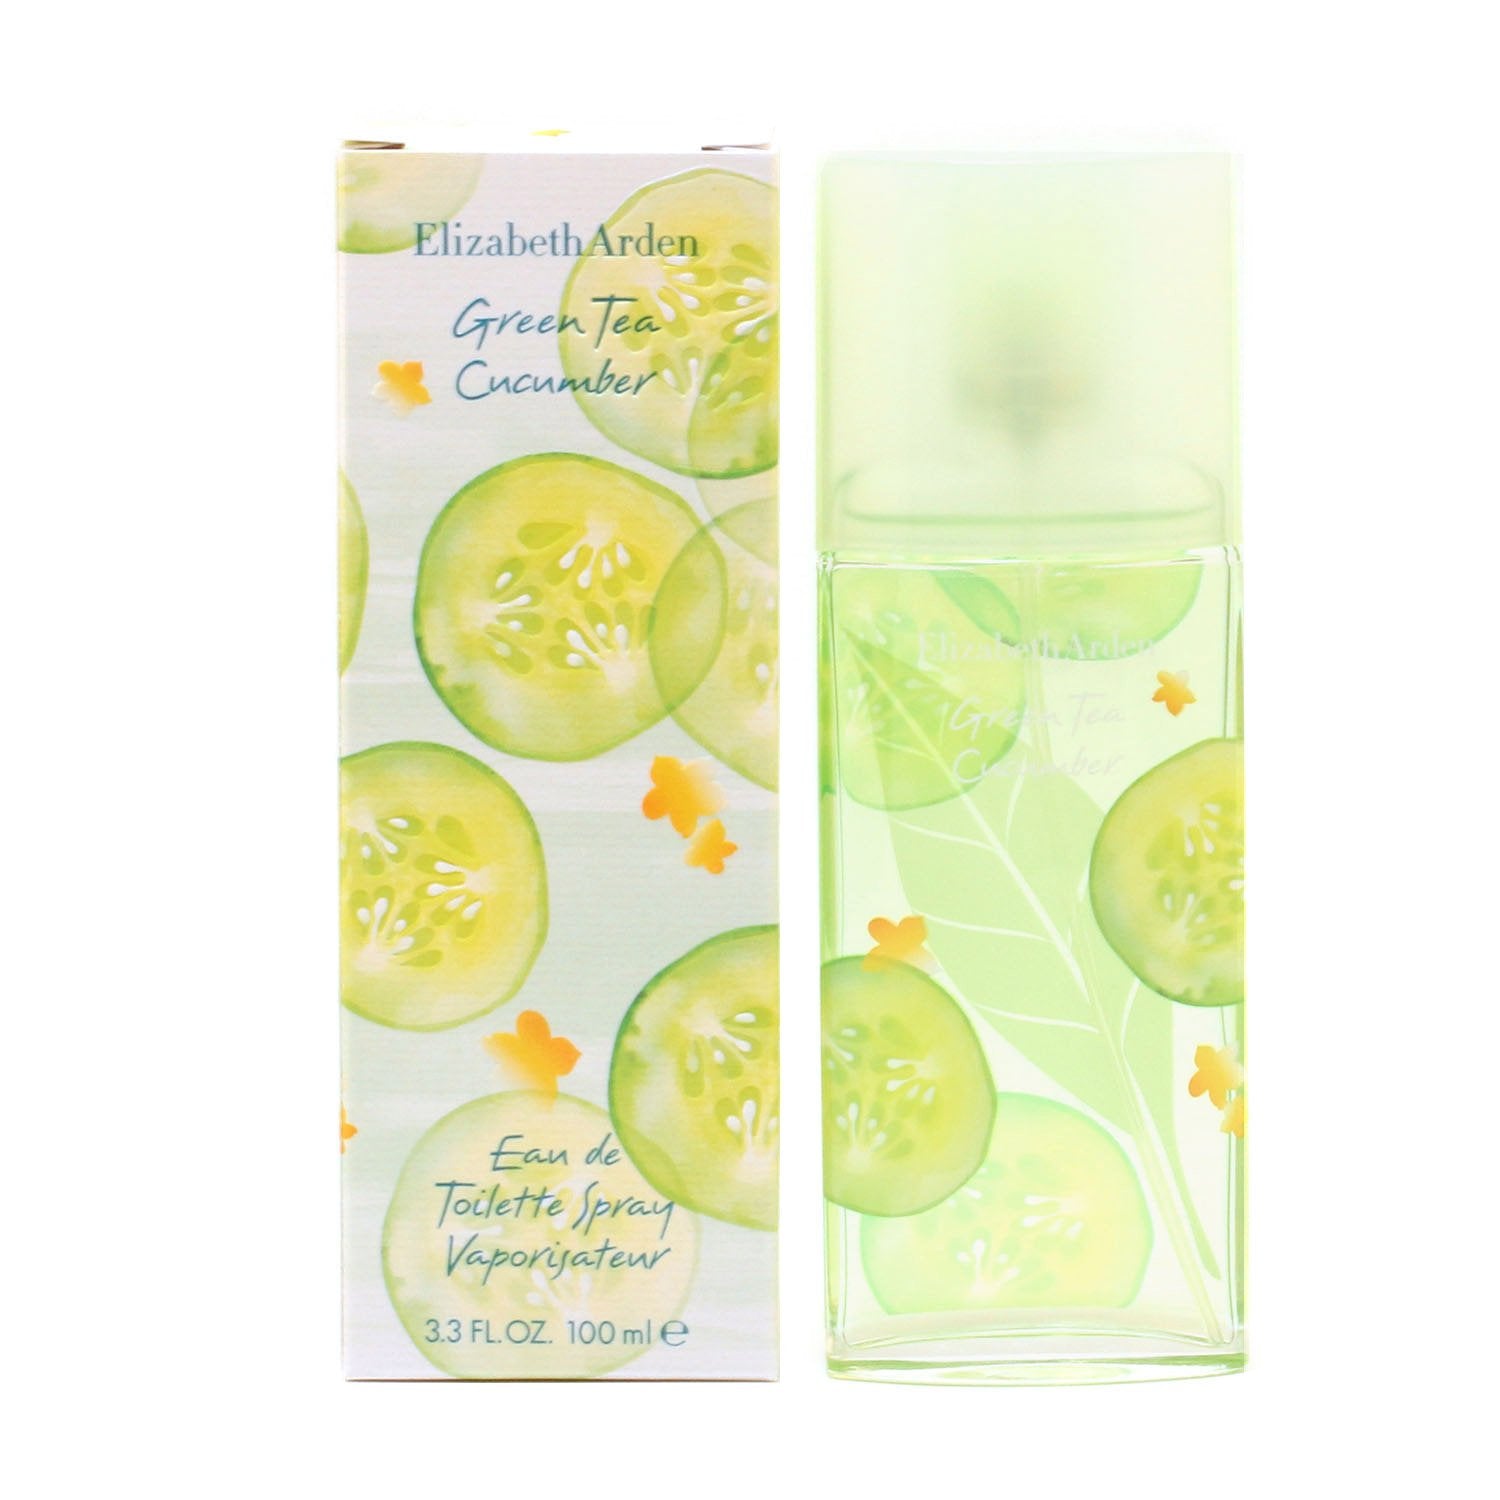 Perfume - GREEN TEA CUCUMBER FOR WOMEN BY ELIZABETH ARDEN - EAU DE TOILETTE SPRAY, 3.3 OZ